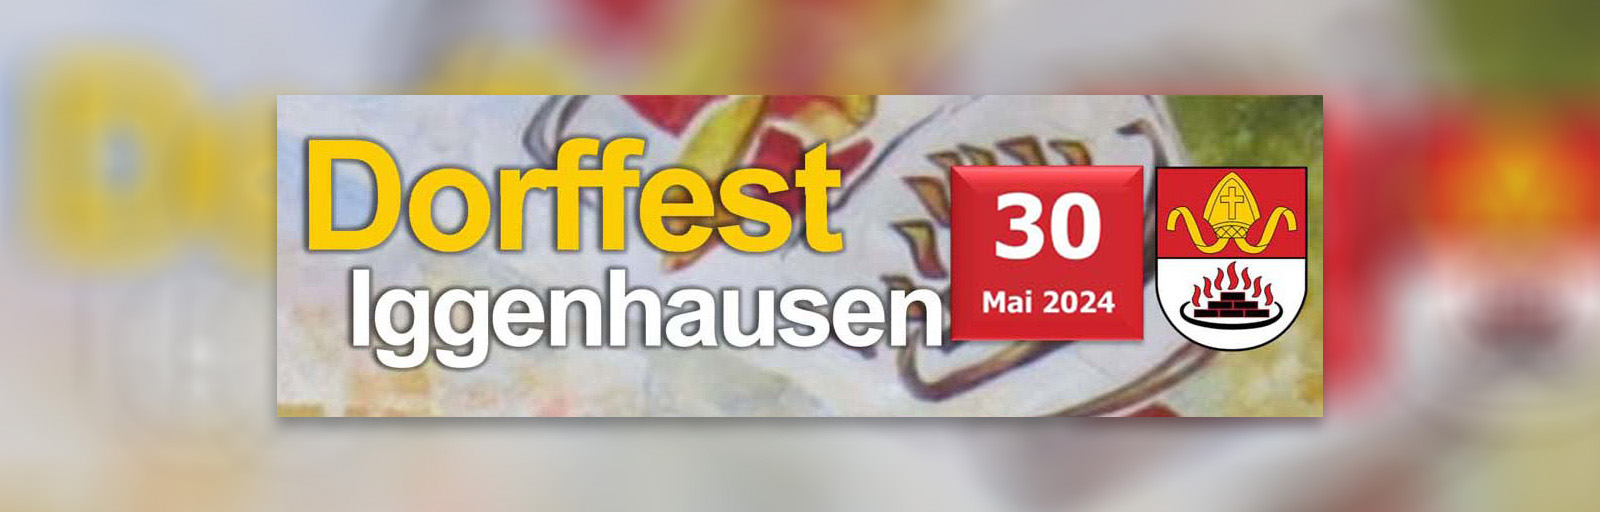 Dorffest in Iggenhausen am 30. Mai